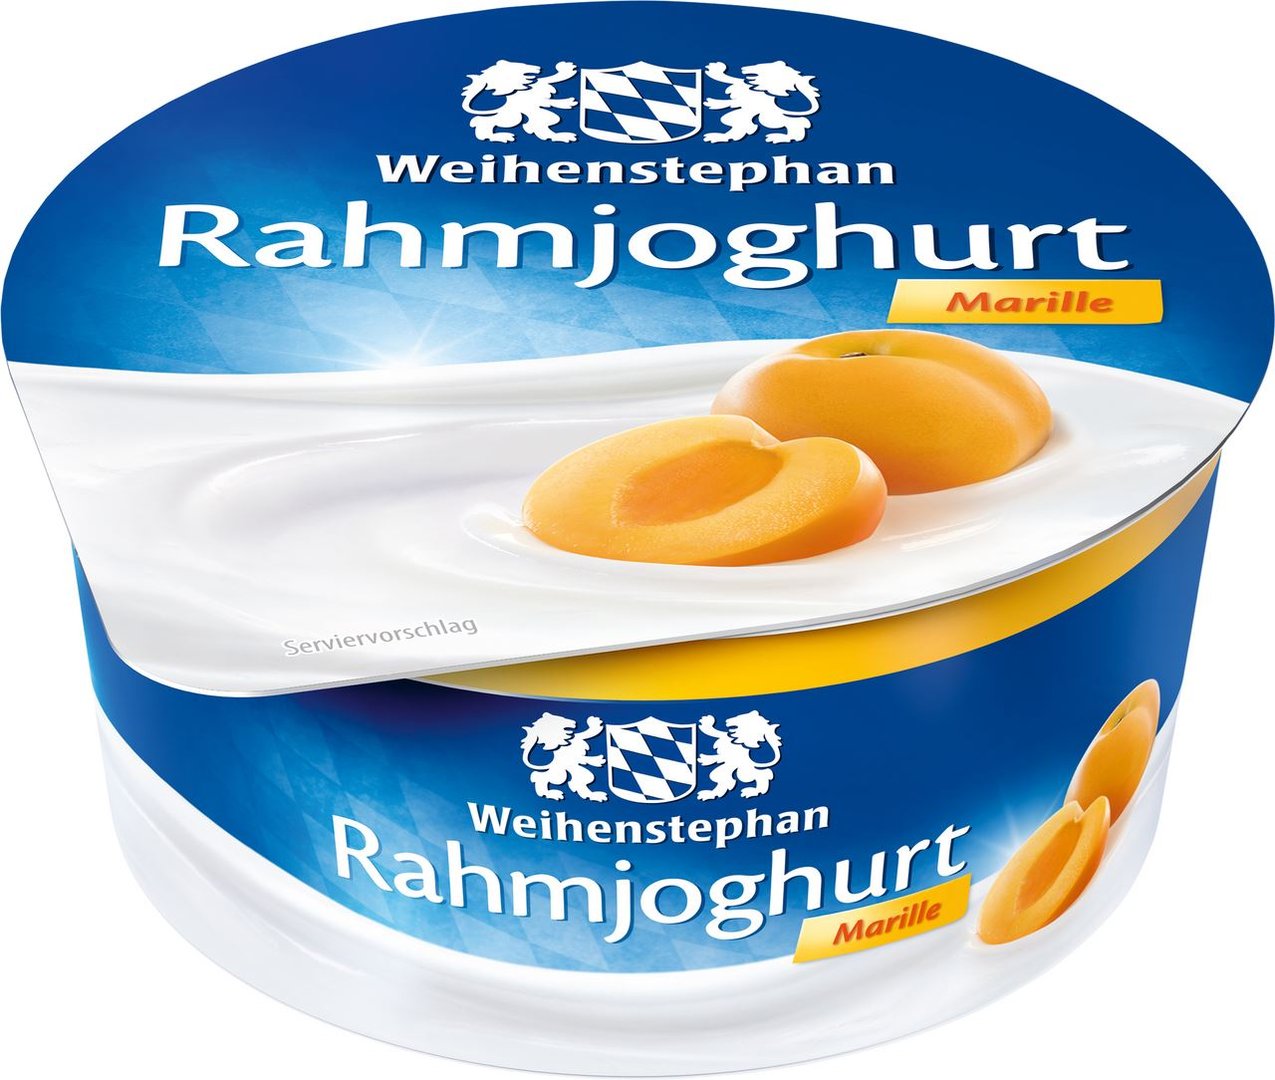 Weihenstephan - Rahmjoghurt Marille 10 % Fett im Milchanteil - 150 g Becher